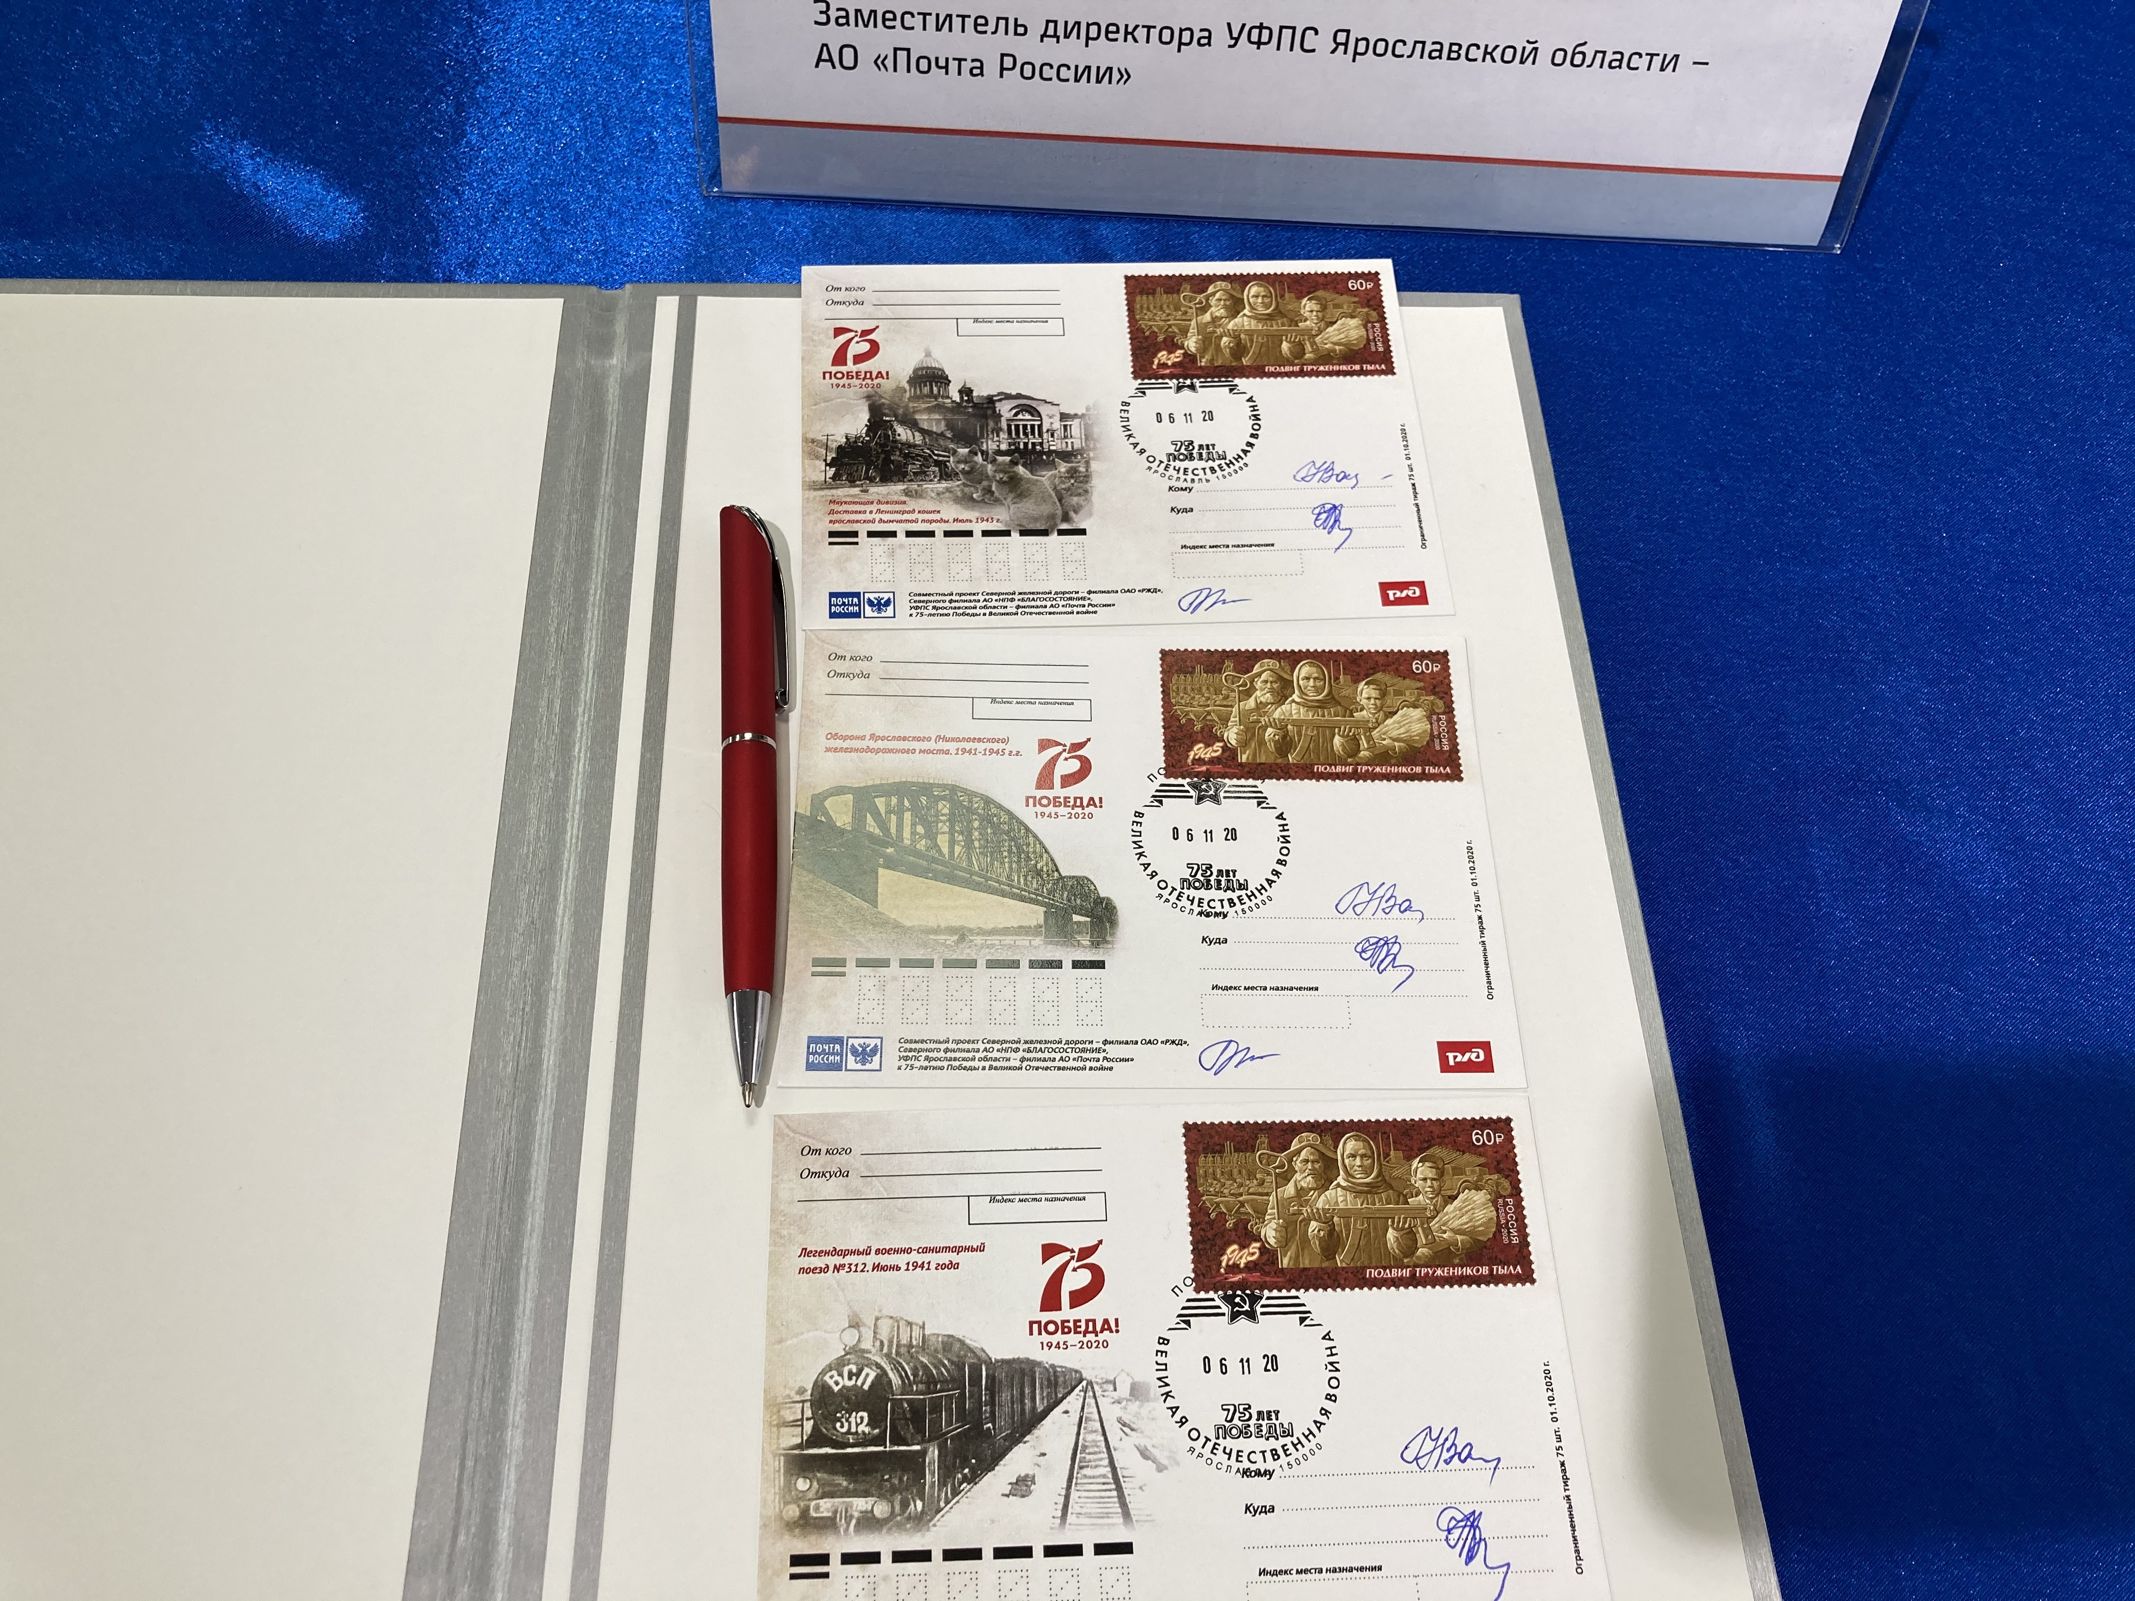 В честь 75-летия Победы состоялось спецгашение открыток, посвященных железнодорожникам